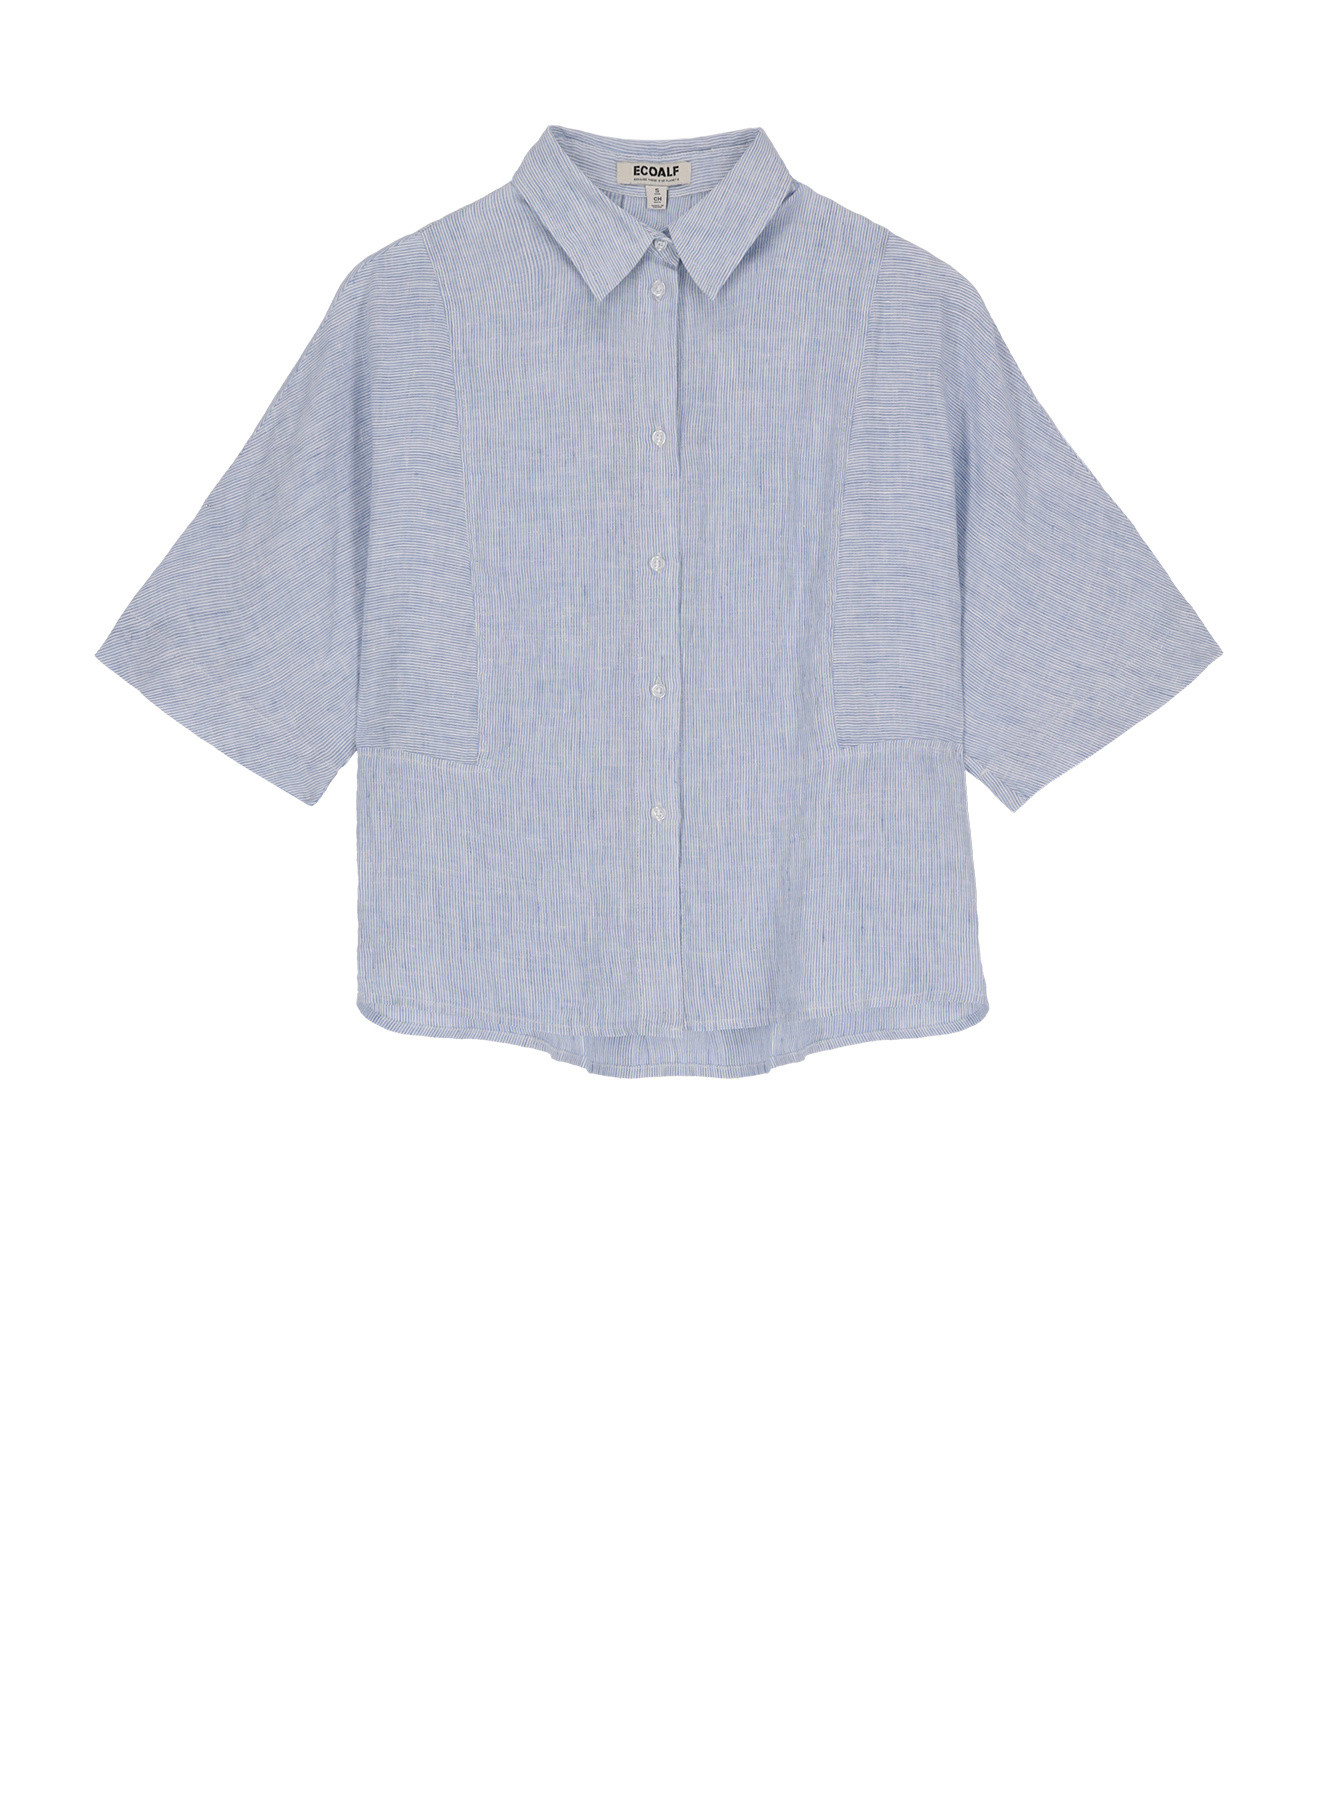 Camicia in lino a maniche corte, Azzurro, large image number 0